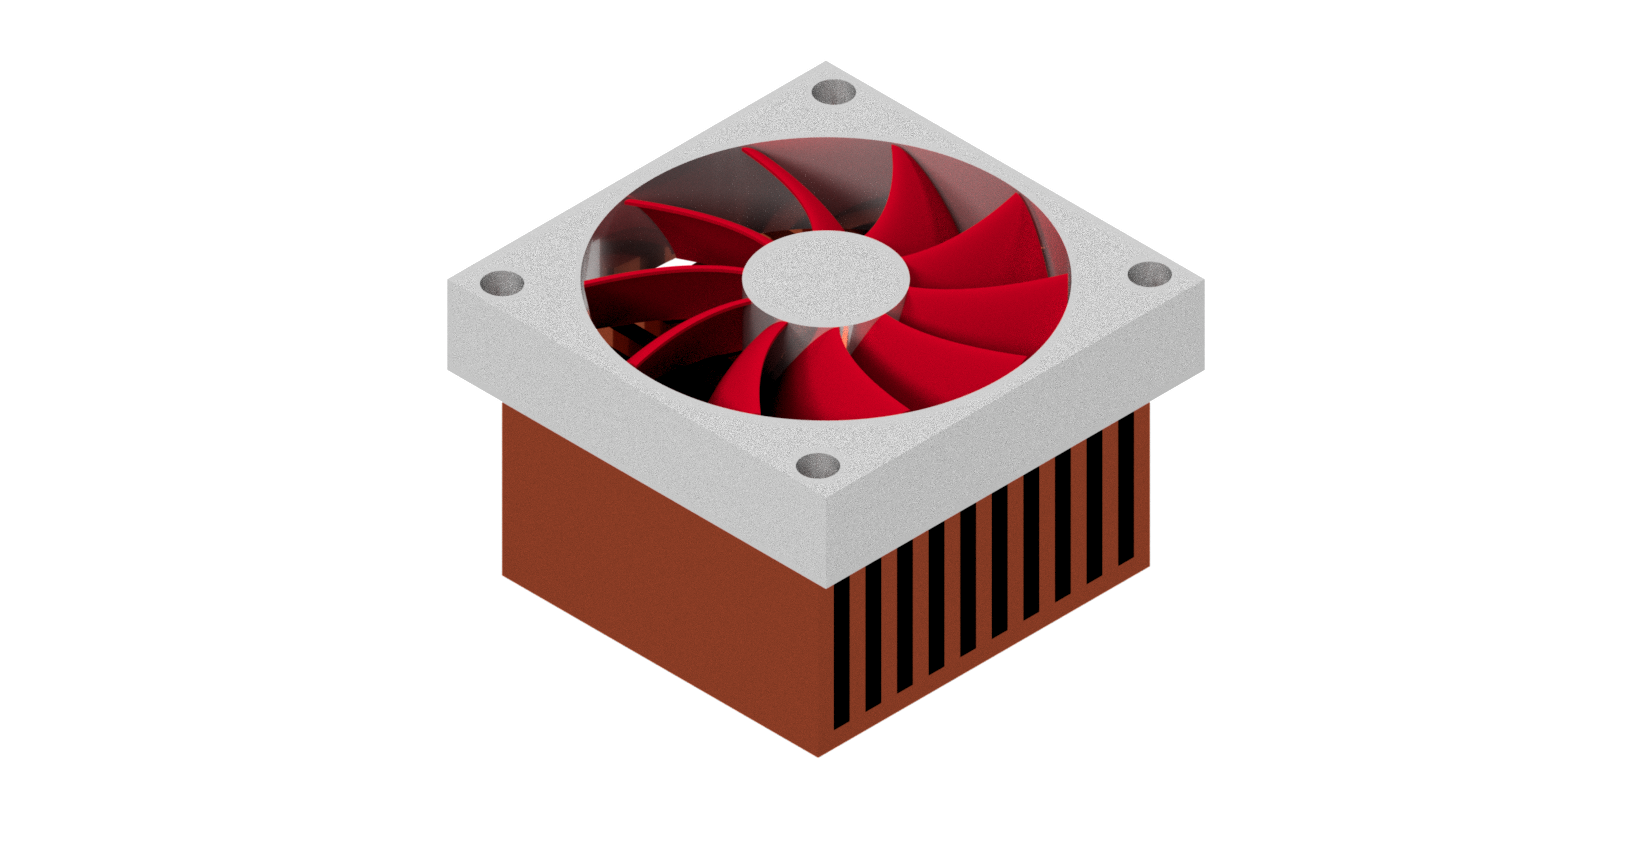 Standard fin heatsink example with a fan on top of it